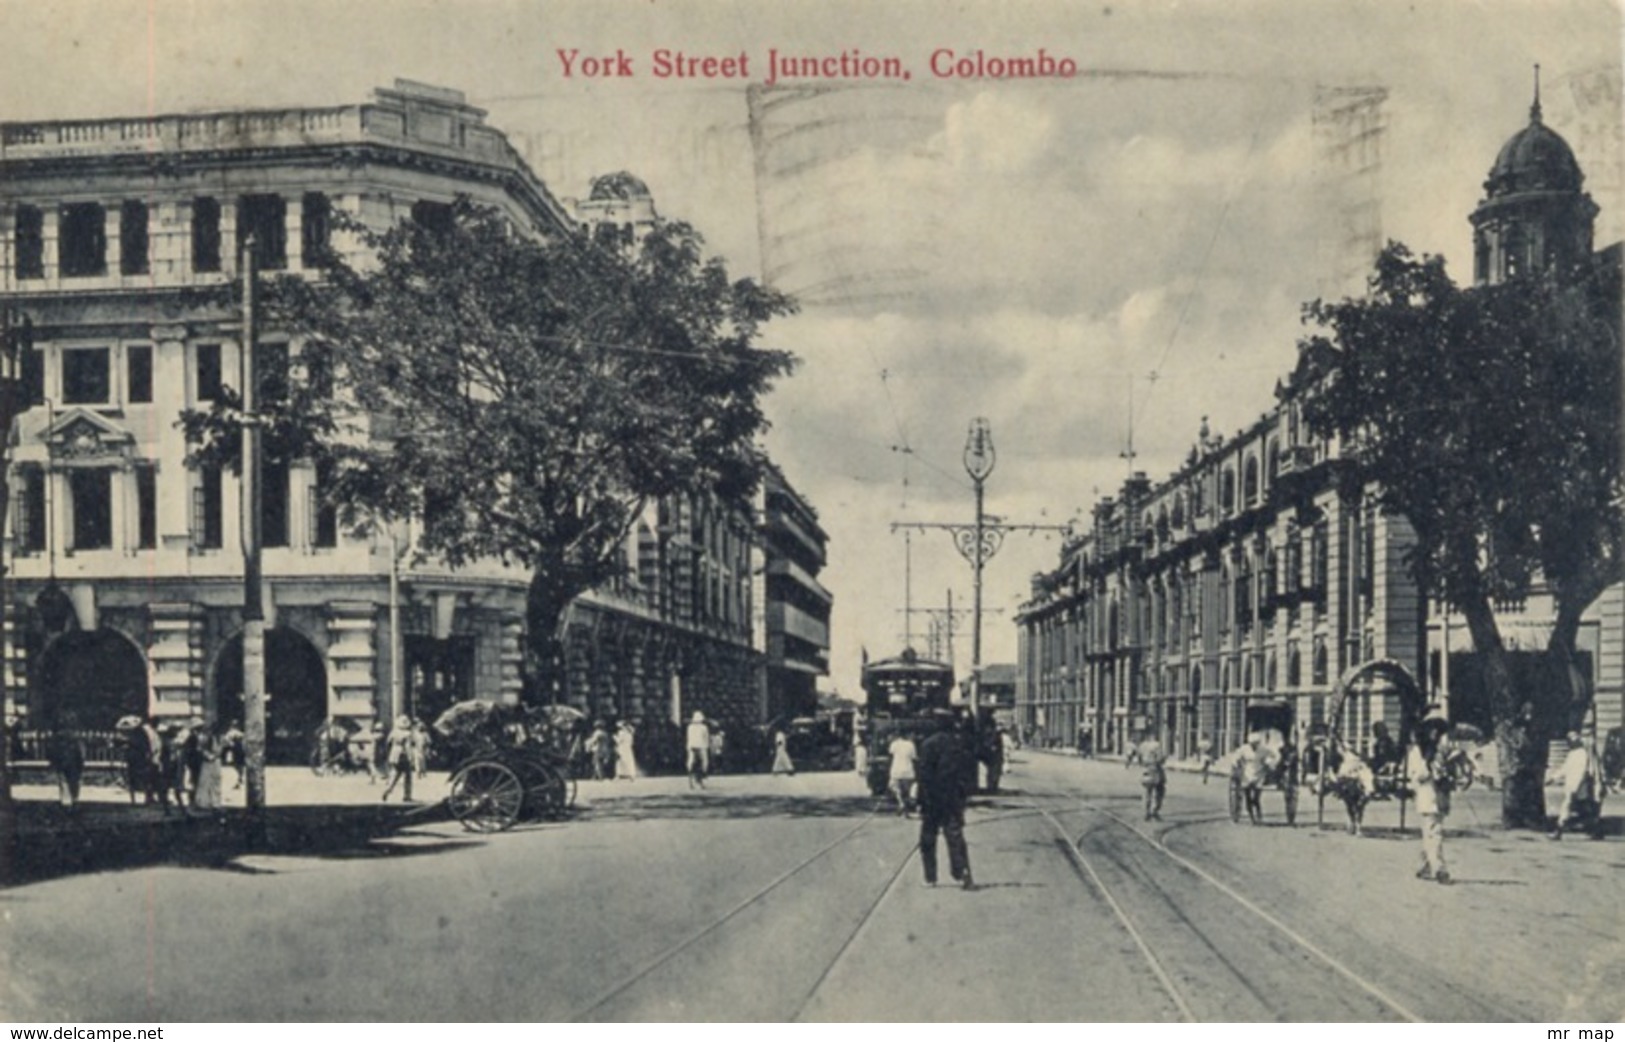 301 - 1929 Sri Lanka Colombo York Street Junction - TRAVELLED - Sri Lanka (Ceylon)